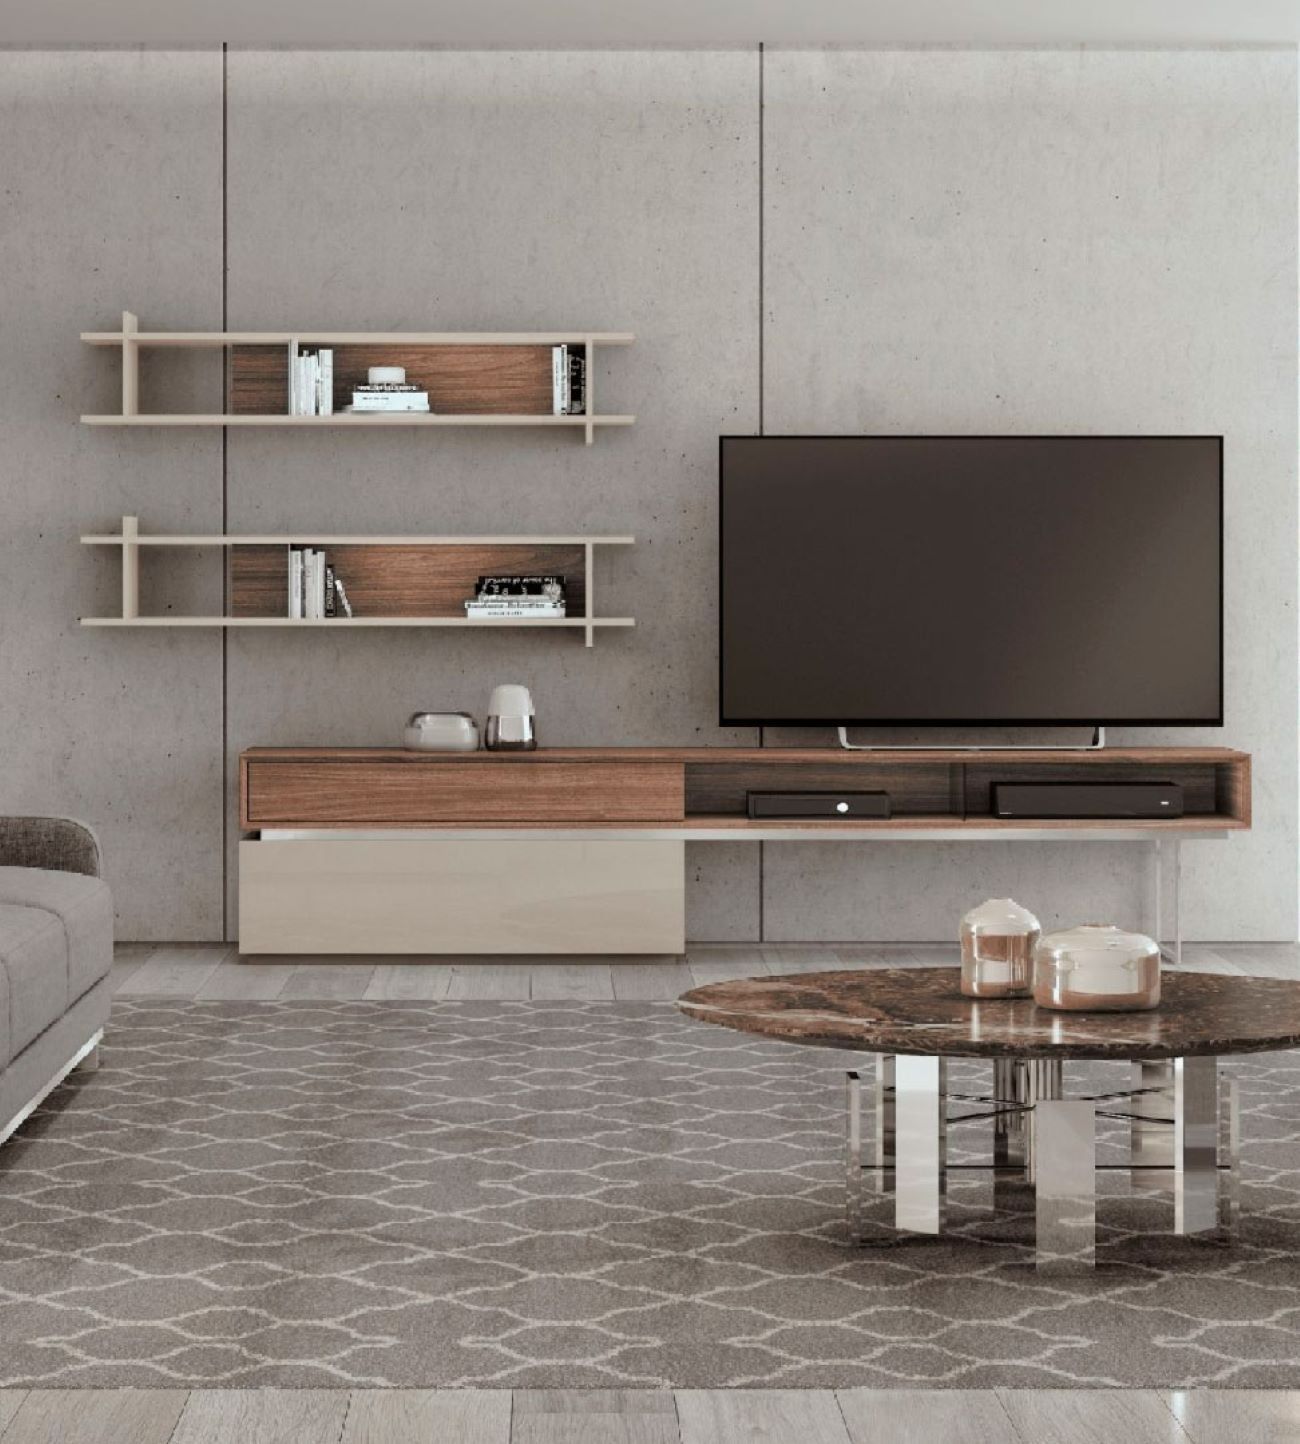 Composição TV Cart 01, Na Graça Interiores encontras diferentes ofertas de estantes TV para completar o teu espaço. Design moderno e funcional adaptados as tuas necessidades.